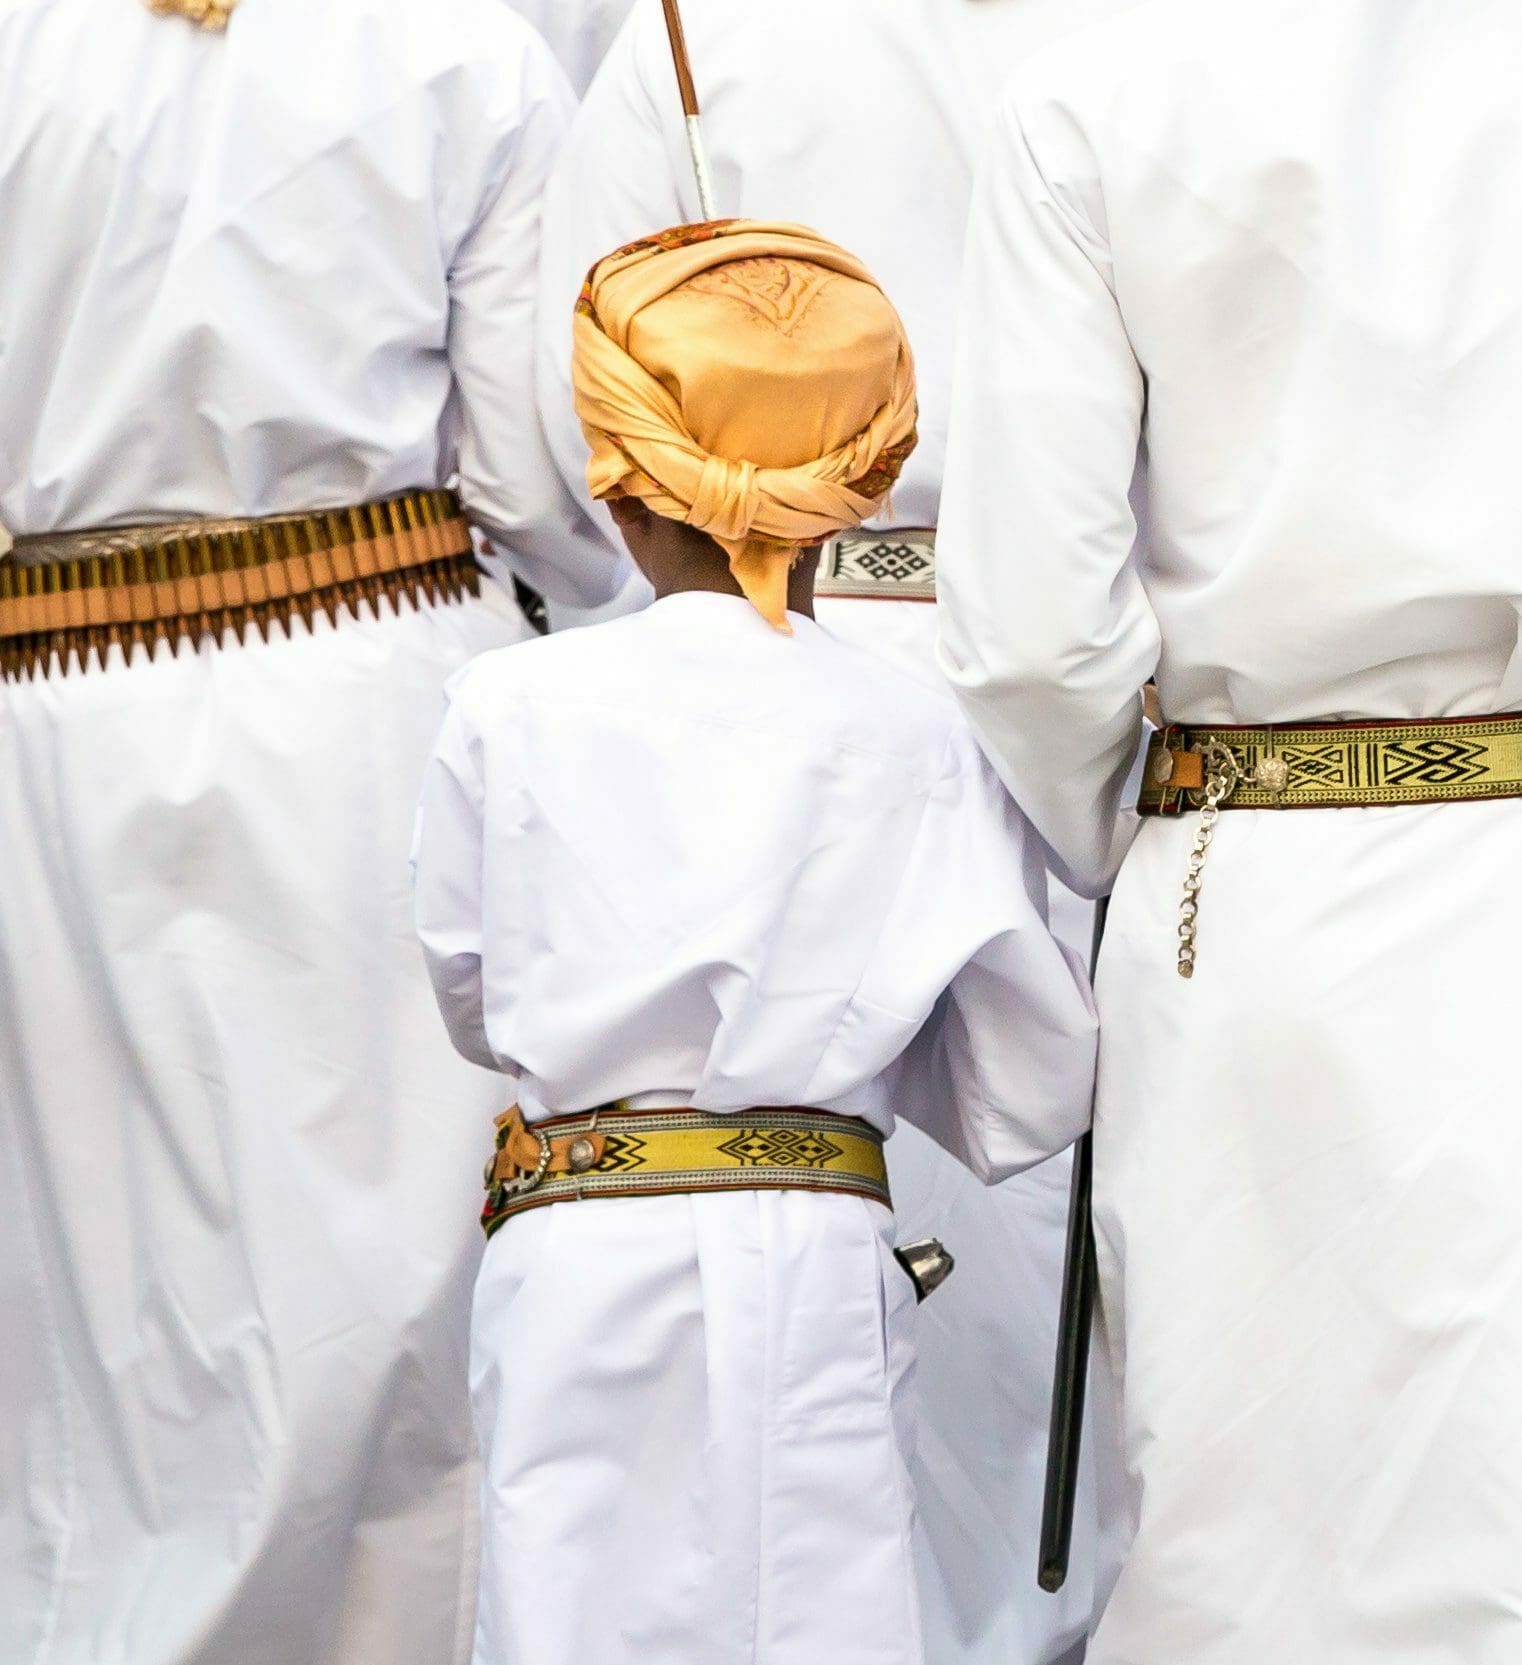 Hombres omaníes vestidos con trajes tradicionales cantando. Omán, Muscat